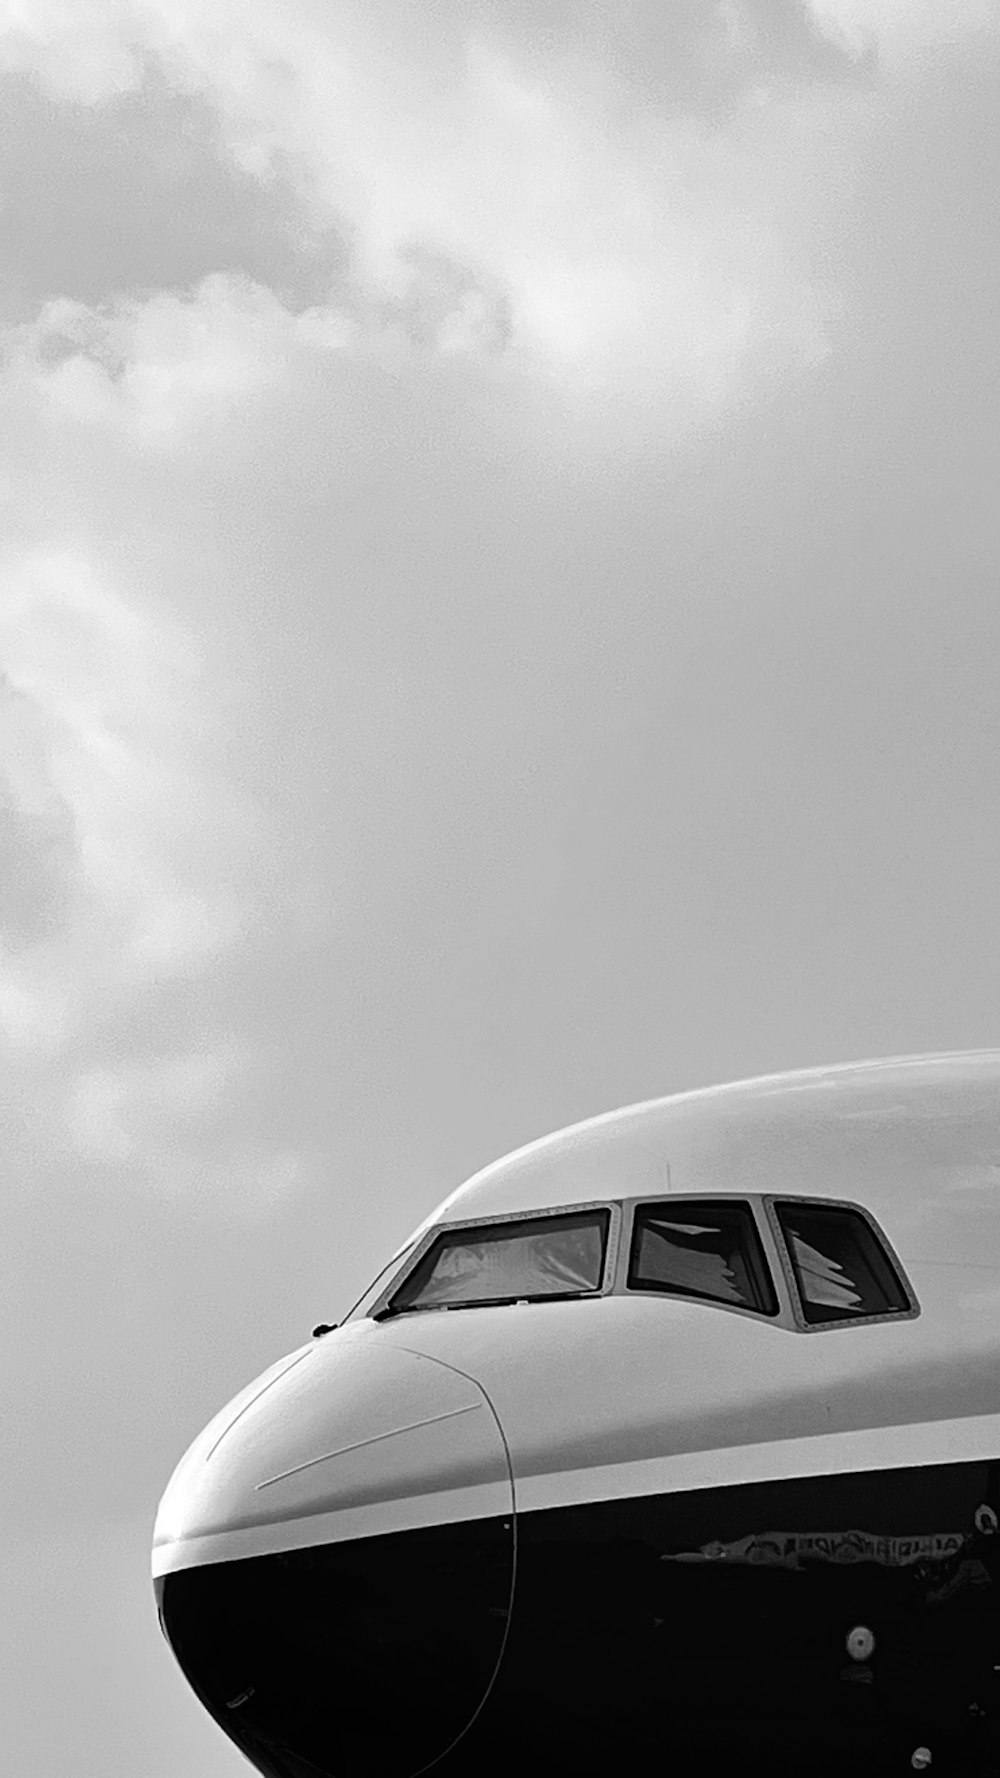 Ein großes Flugzeug sitzt auf dem Rollfeld eines Flughafens